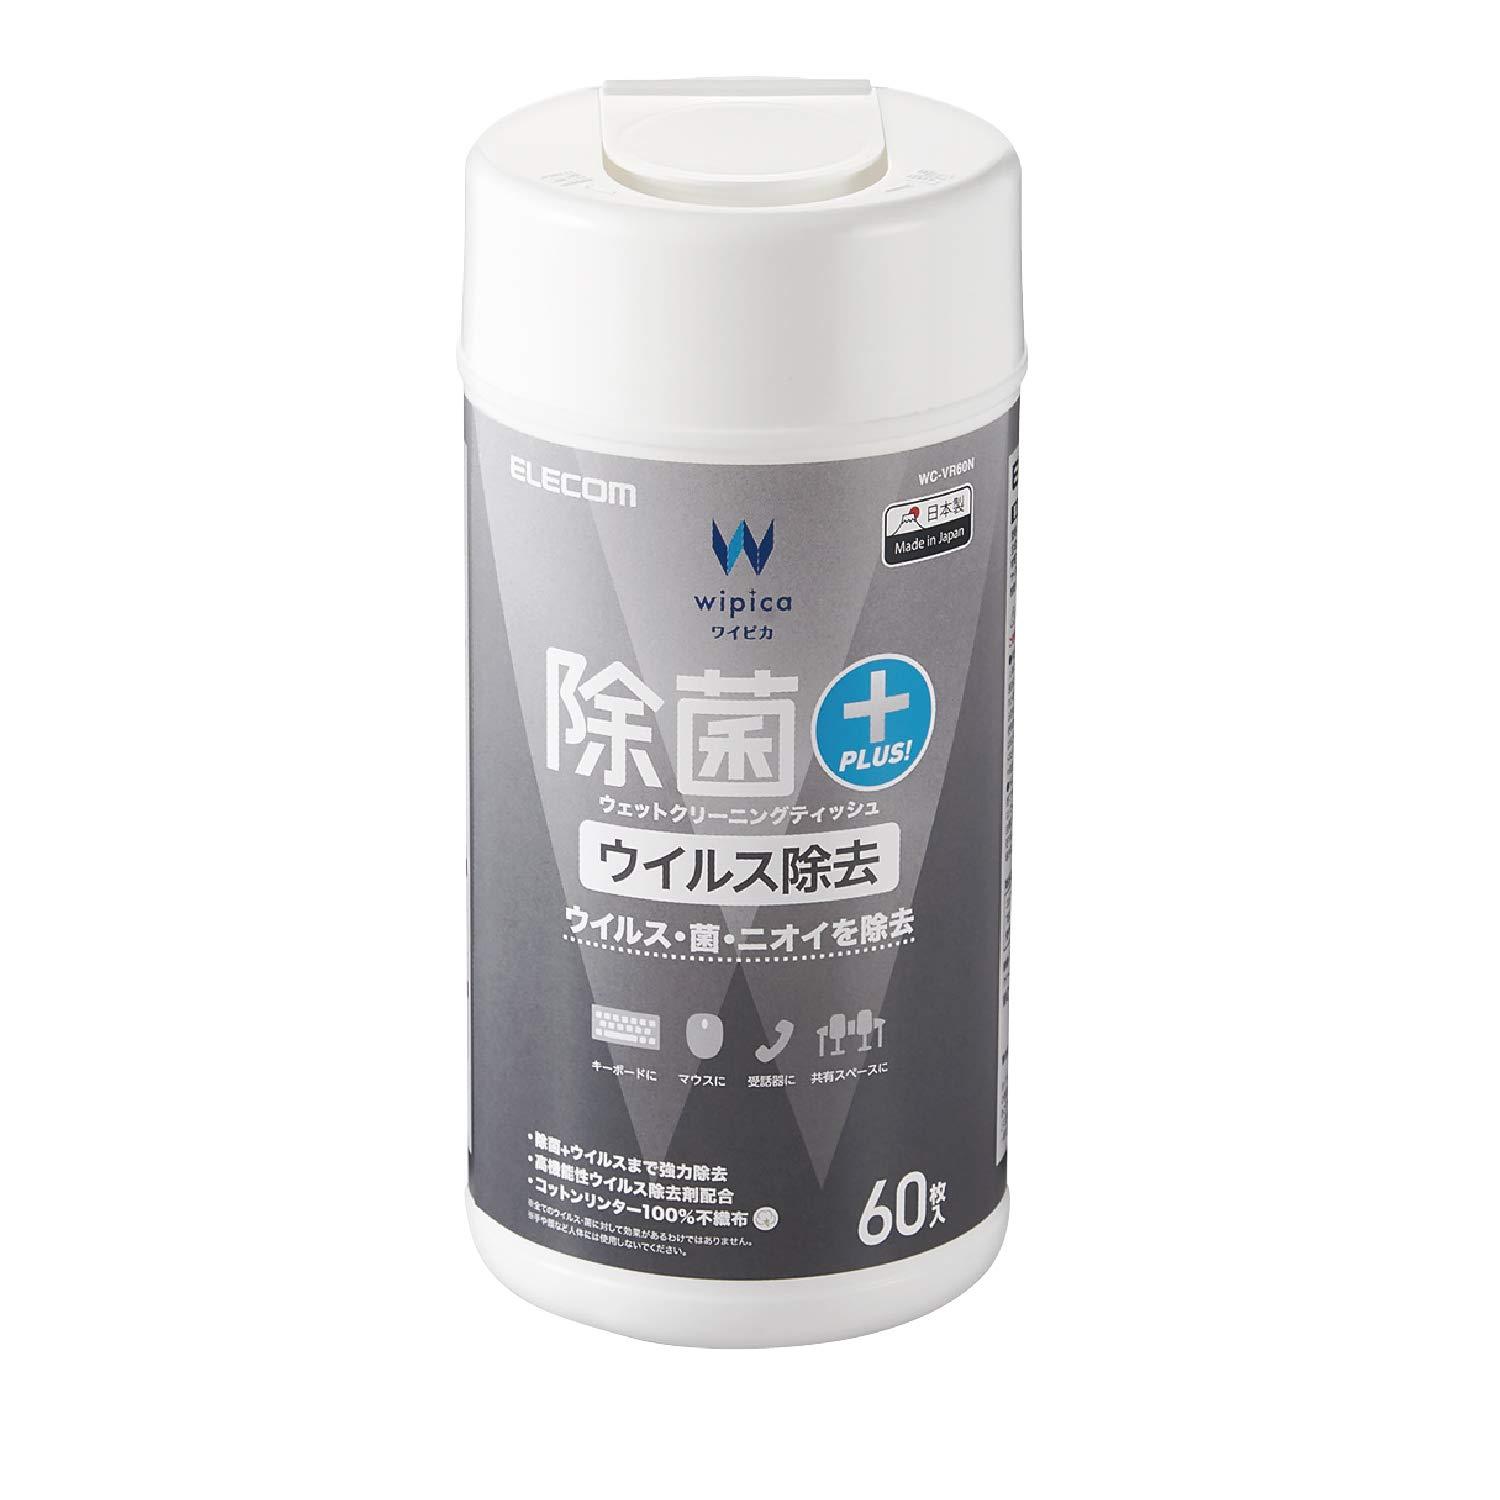  クリーナー ウェットティッシュ [アルコールと高機能性ウイルス除去剤を配合] 60枚 ボトル 日本製 WC-VR60N